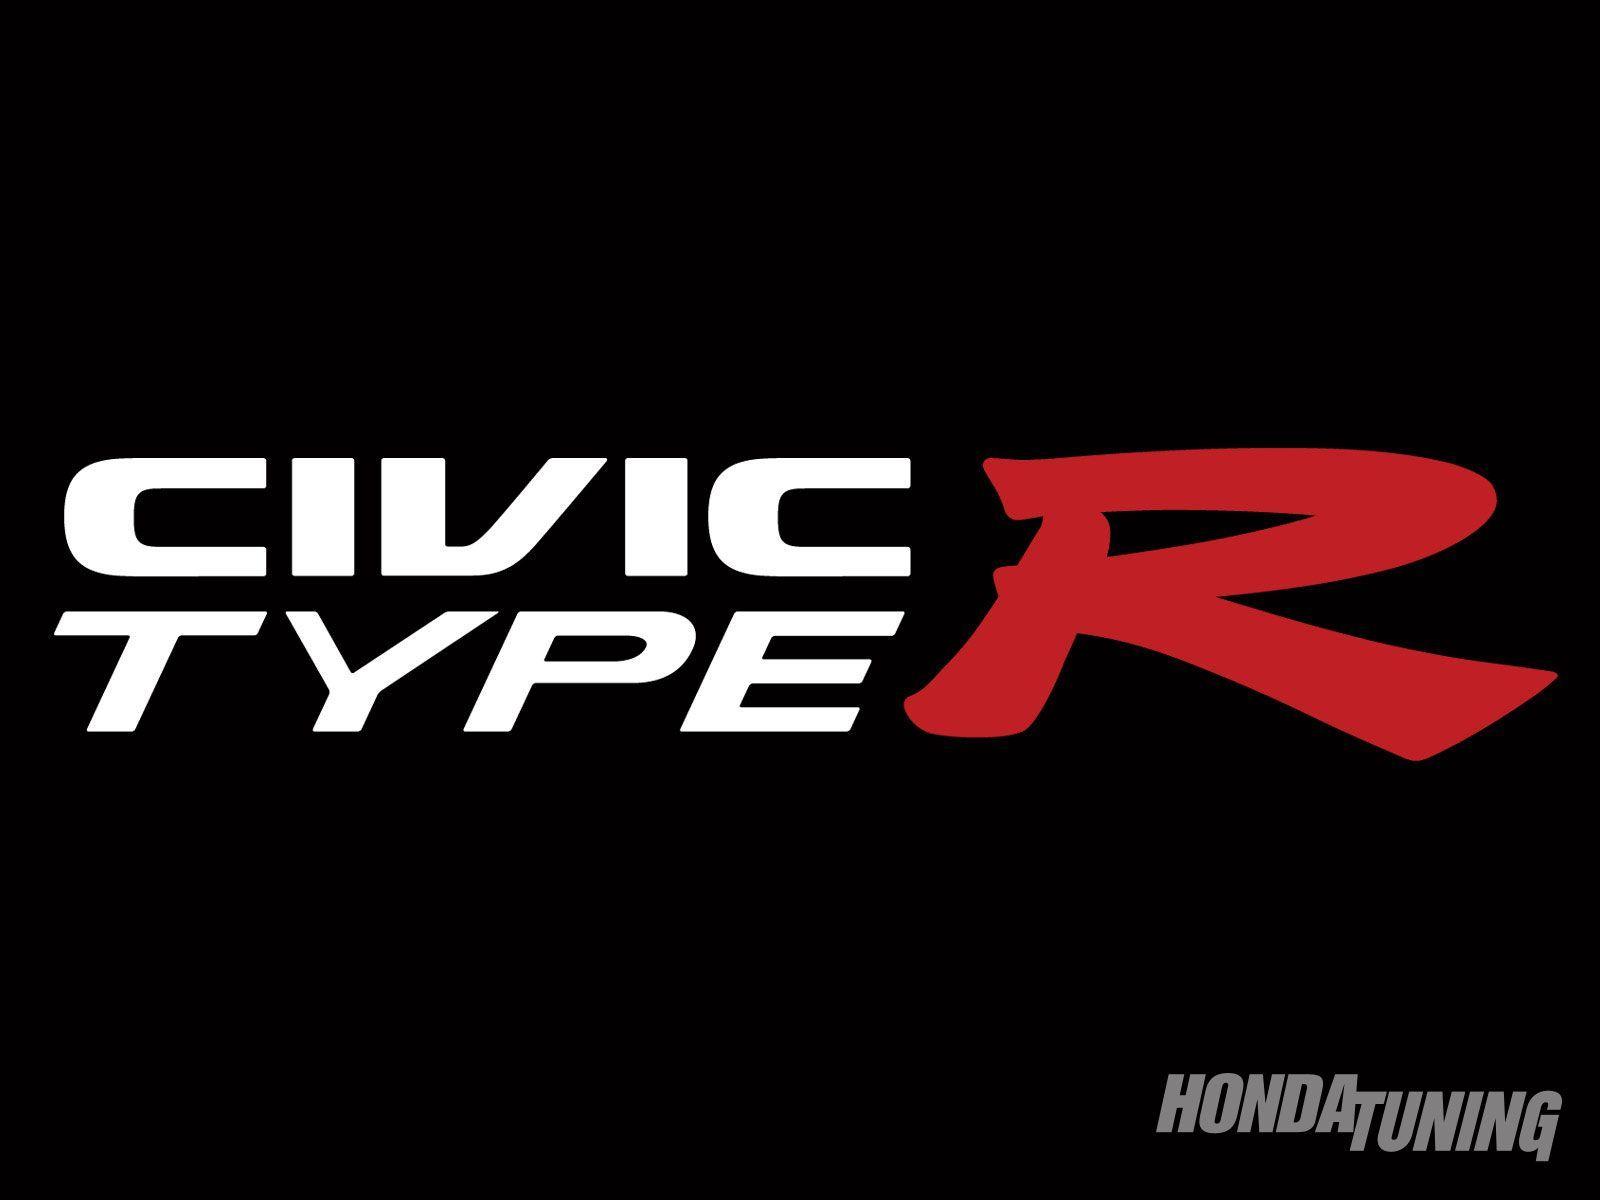 Honda Civic Logo - Honda civic Logos